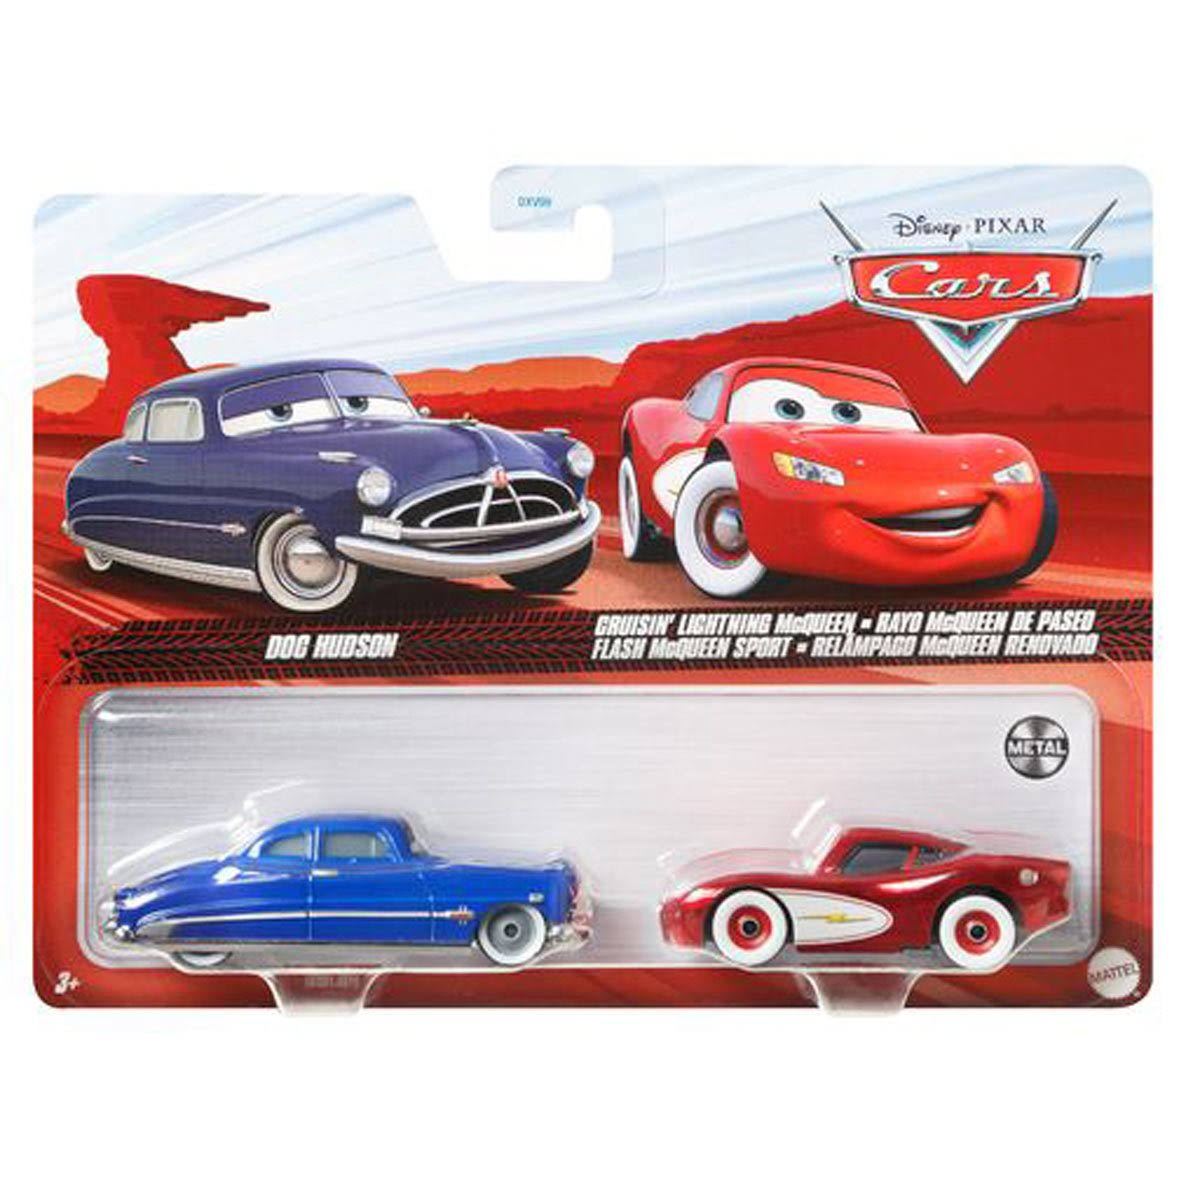 Disney Pixar Cars Doc Hudson and Cruisin' Lightning McQueen 2-Pack